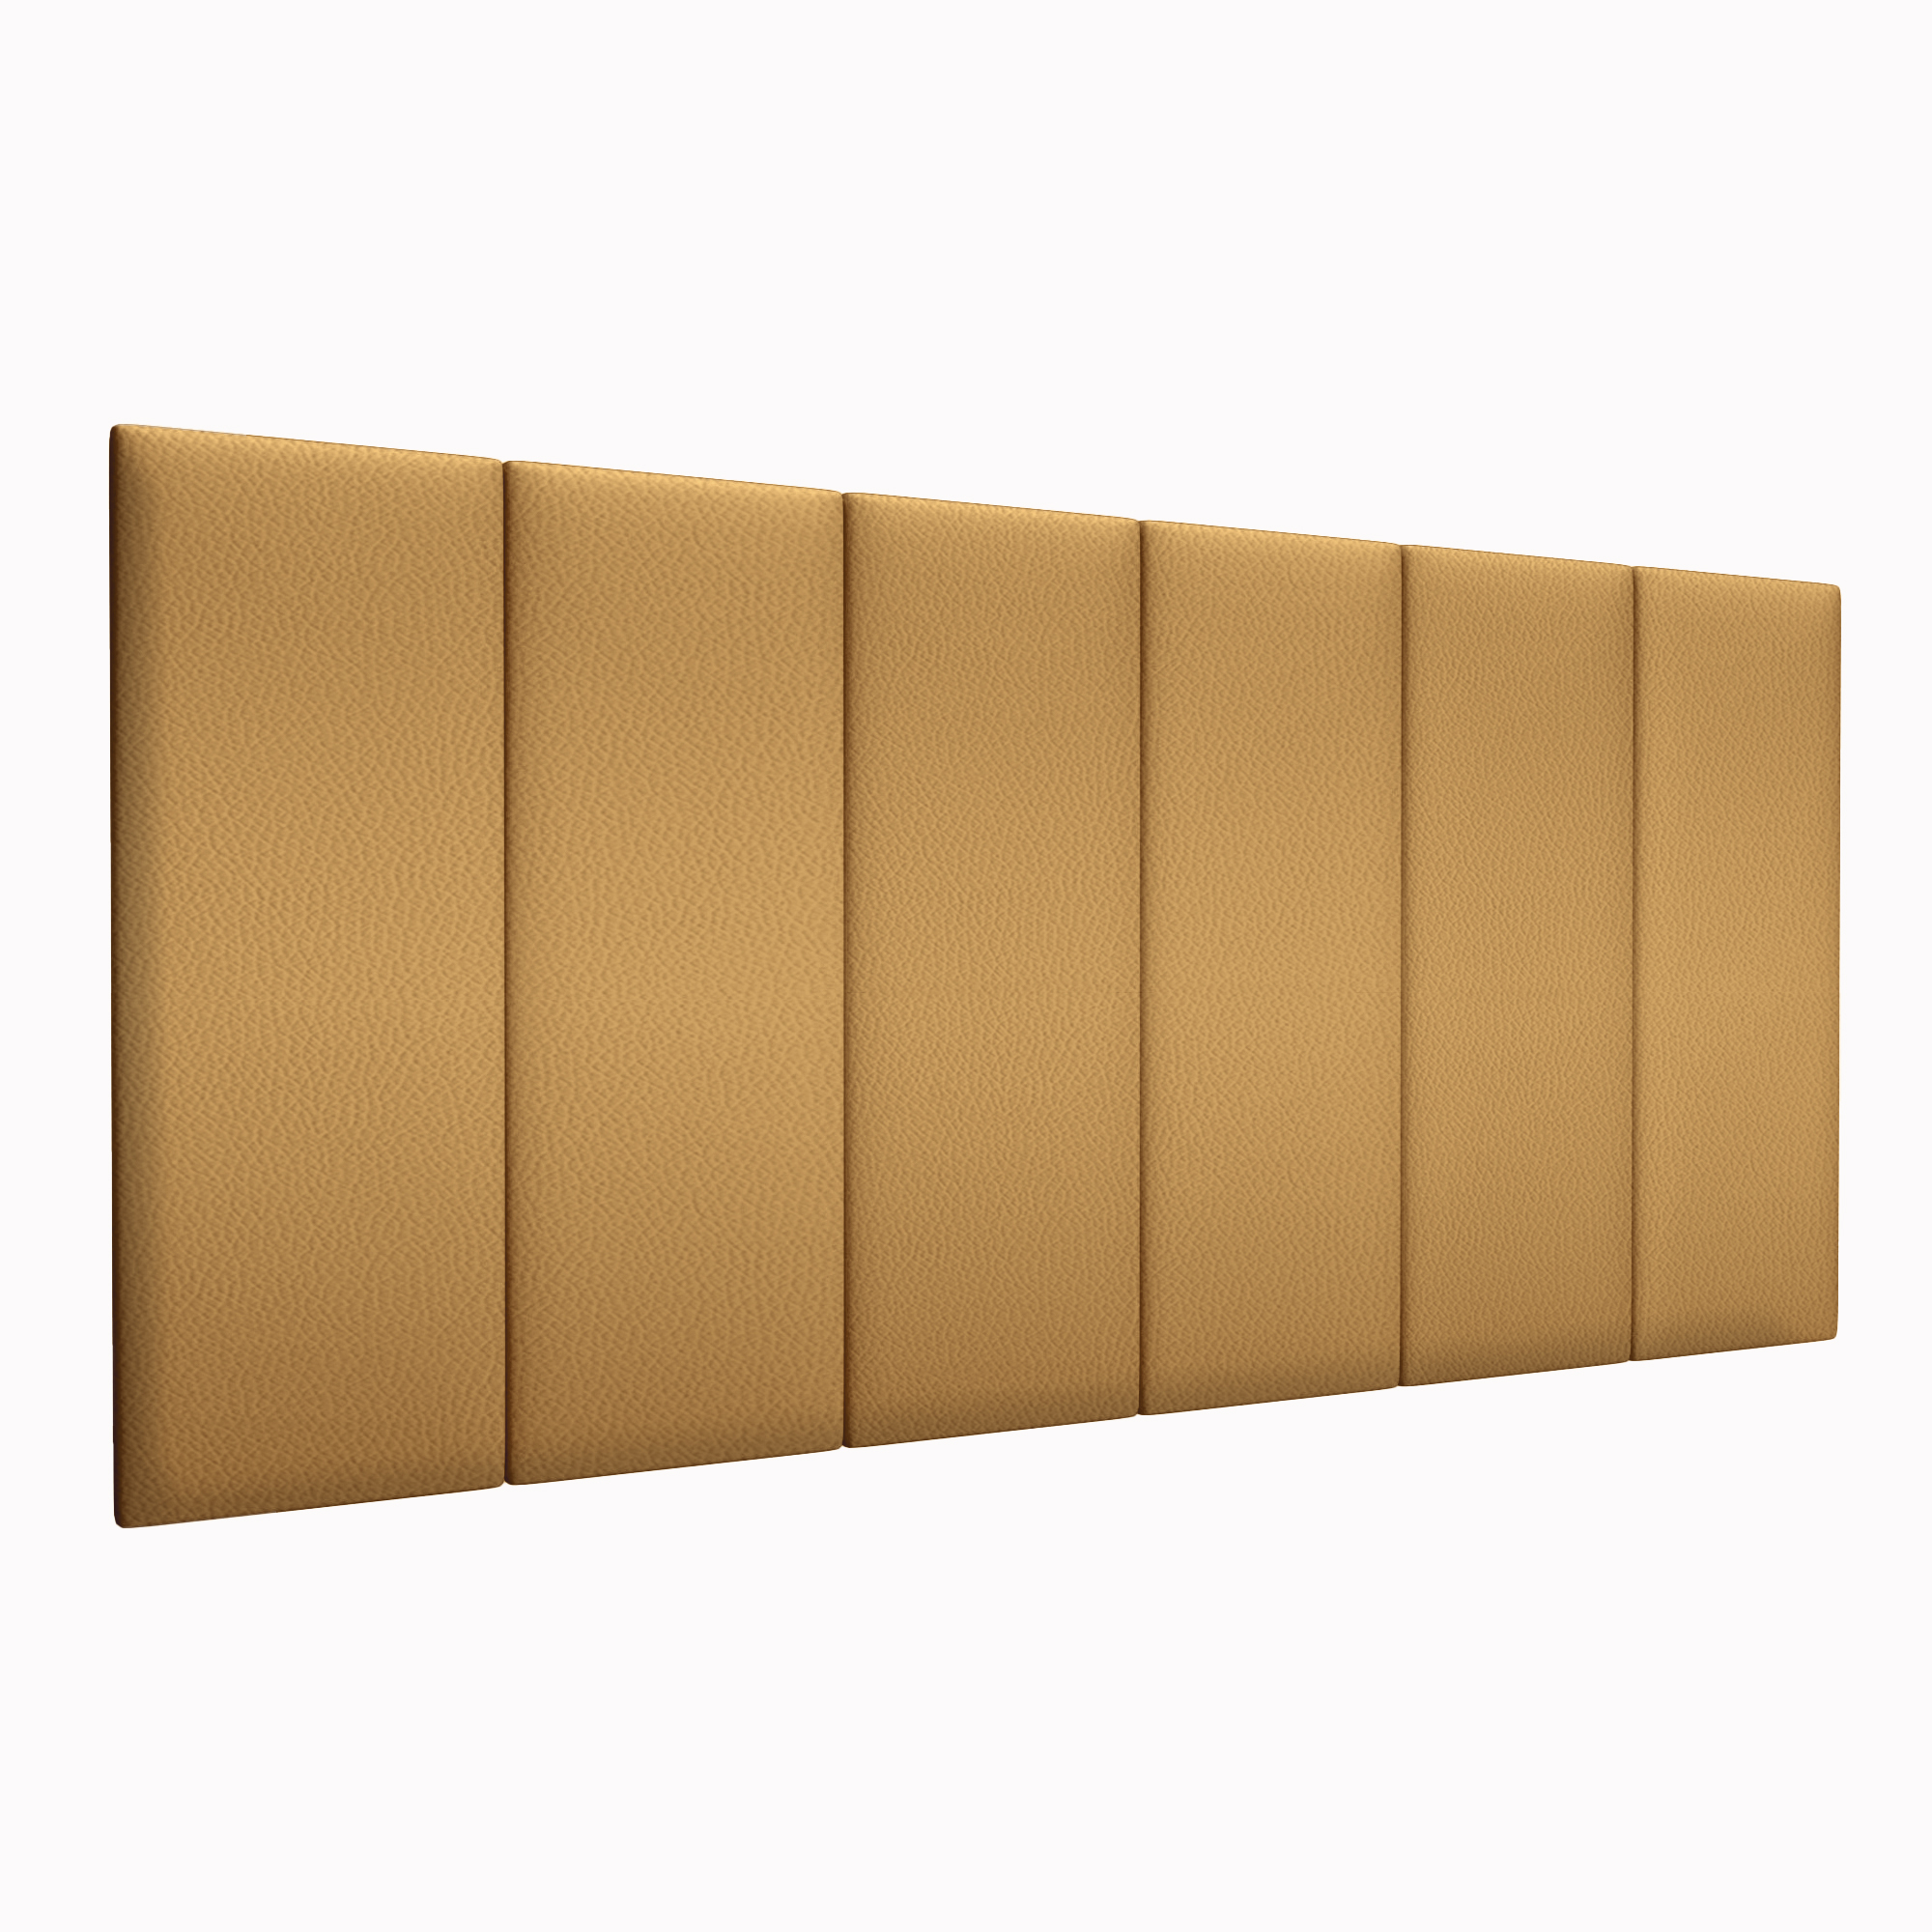 фото Прикроватная панель eco leather gold 30х80 см 4 шт. tartilla